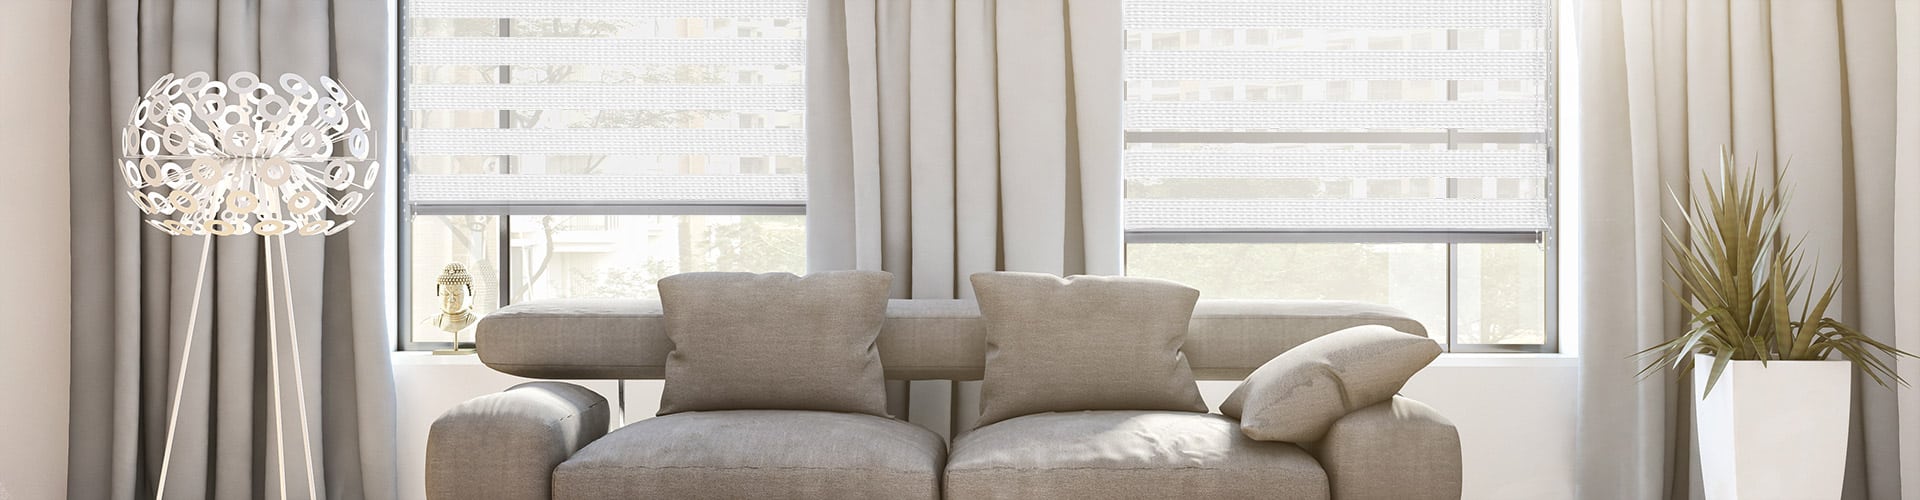 Weisse Doppelrollos als neutrales Stilelement in Ihrer Wohnung